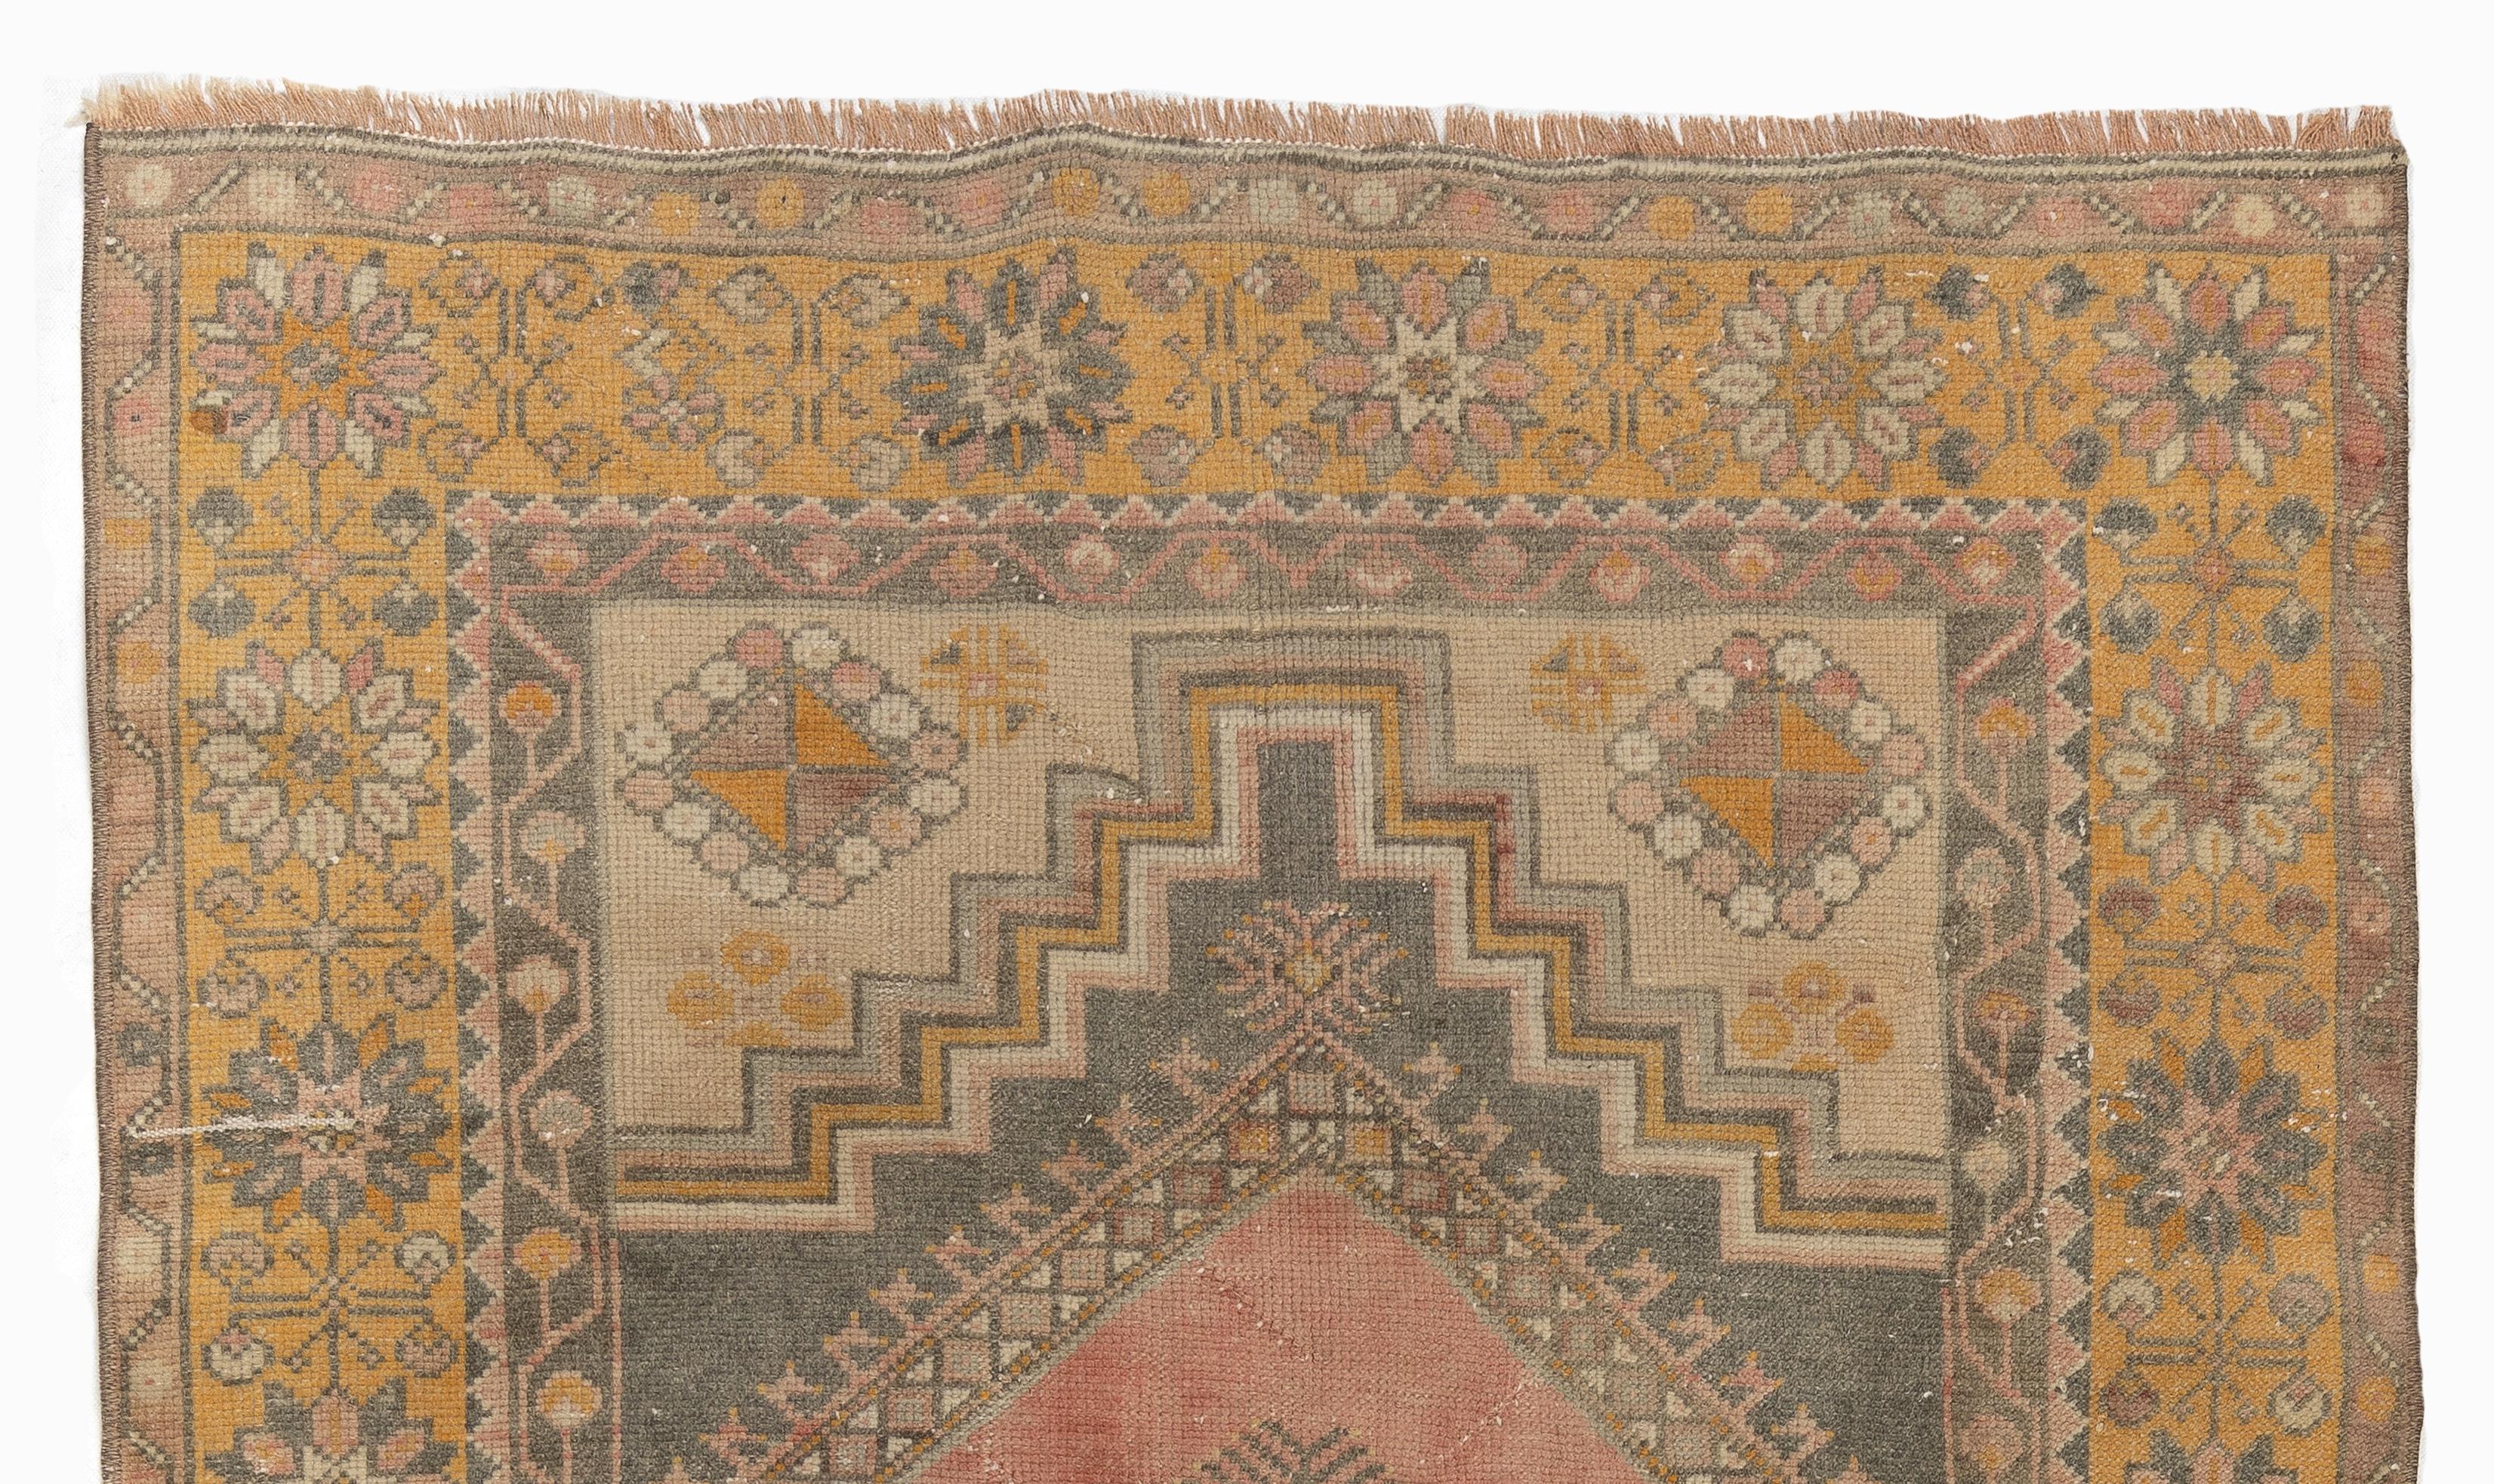 Tapis turc vintage des années 1960, finement noué à la main, présentant un motif de médaillon géométrique. Le tapis a même des poils bas en laine sur une base en coton. Il est lourd et repose à plat sur le sol, en très bon état et sans problème. Il